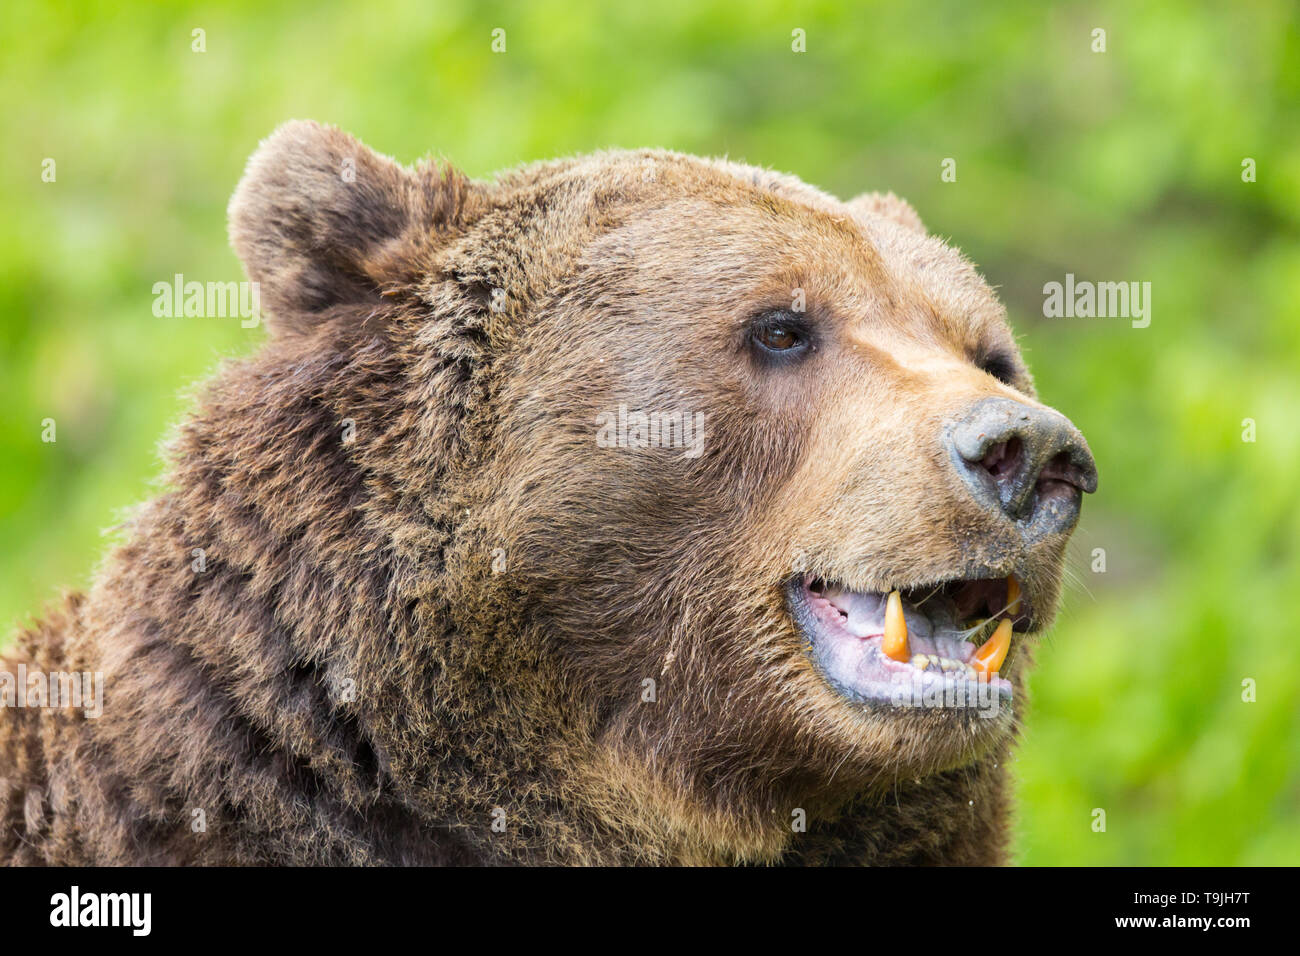 brown bear teeth